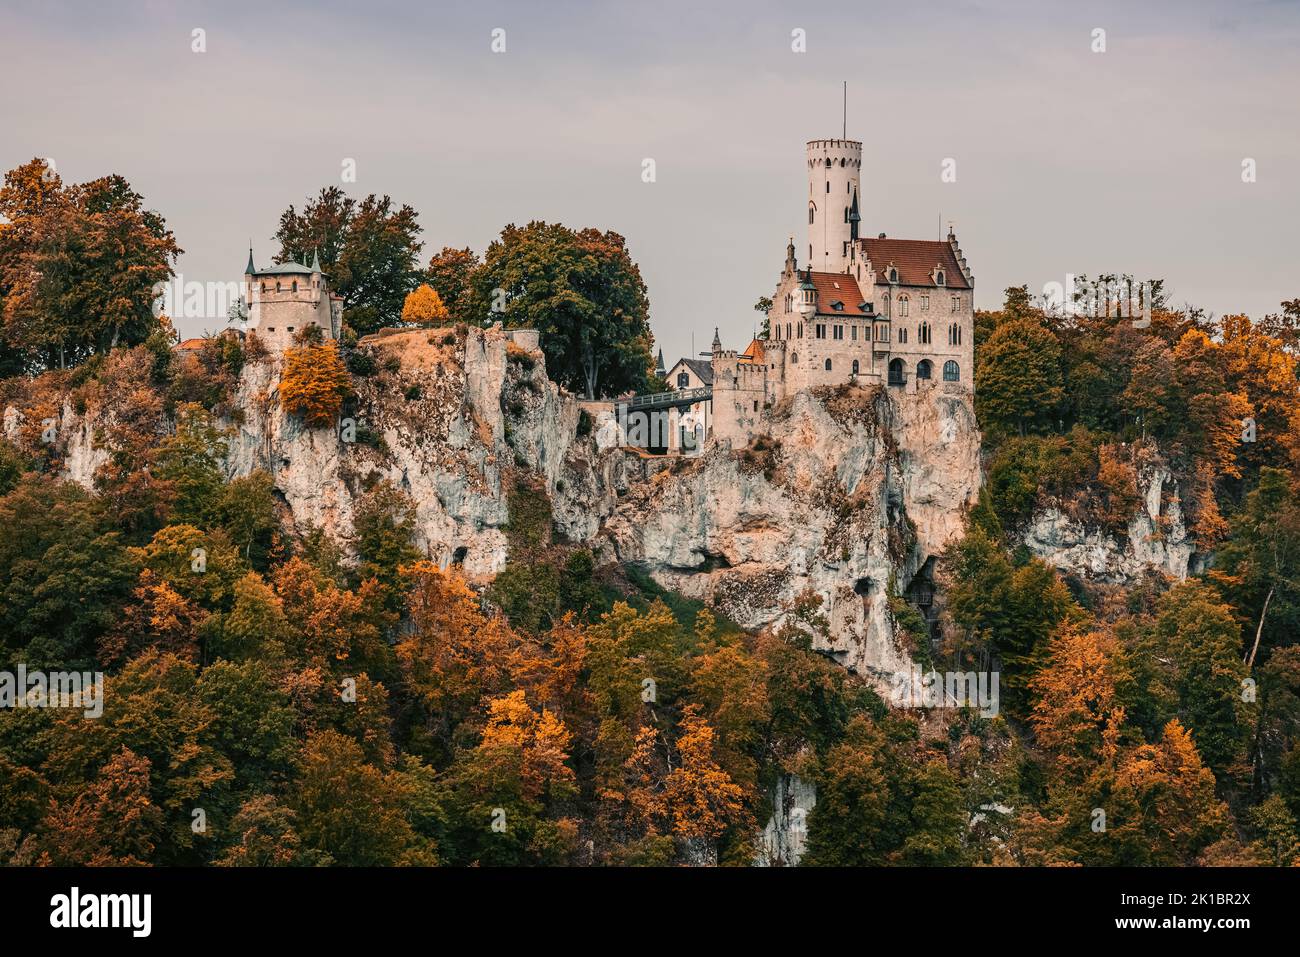 Colores otoñales en el Castillo de Lichtenstein, un castillo gótico de propiedad privada situado en el Jura Suabia del sur de Alemania. Fue diseñado por Car Foto de stock